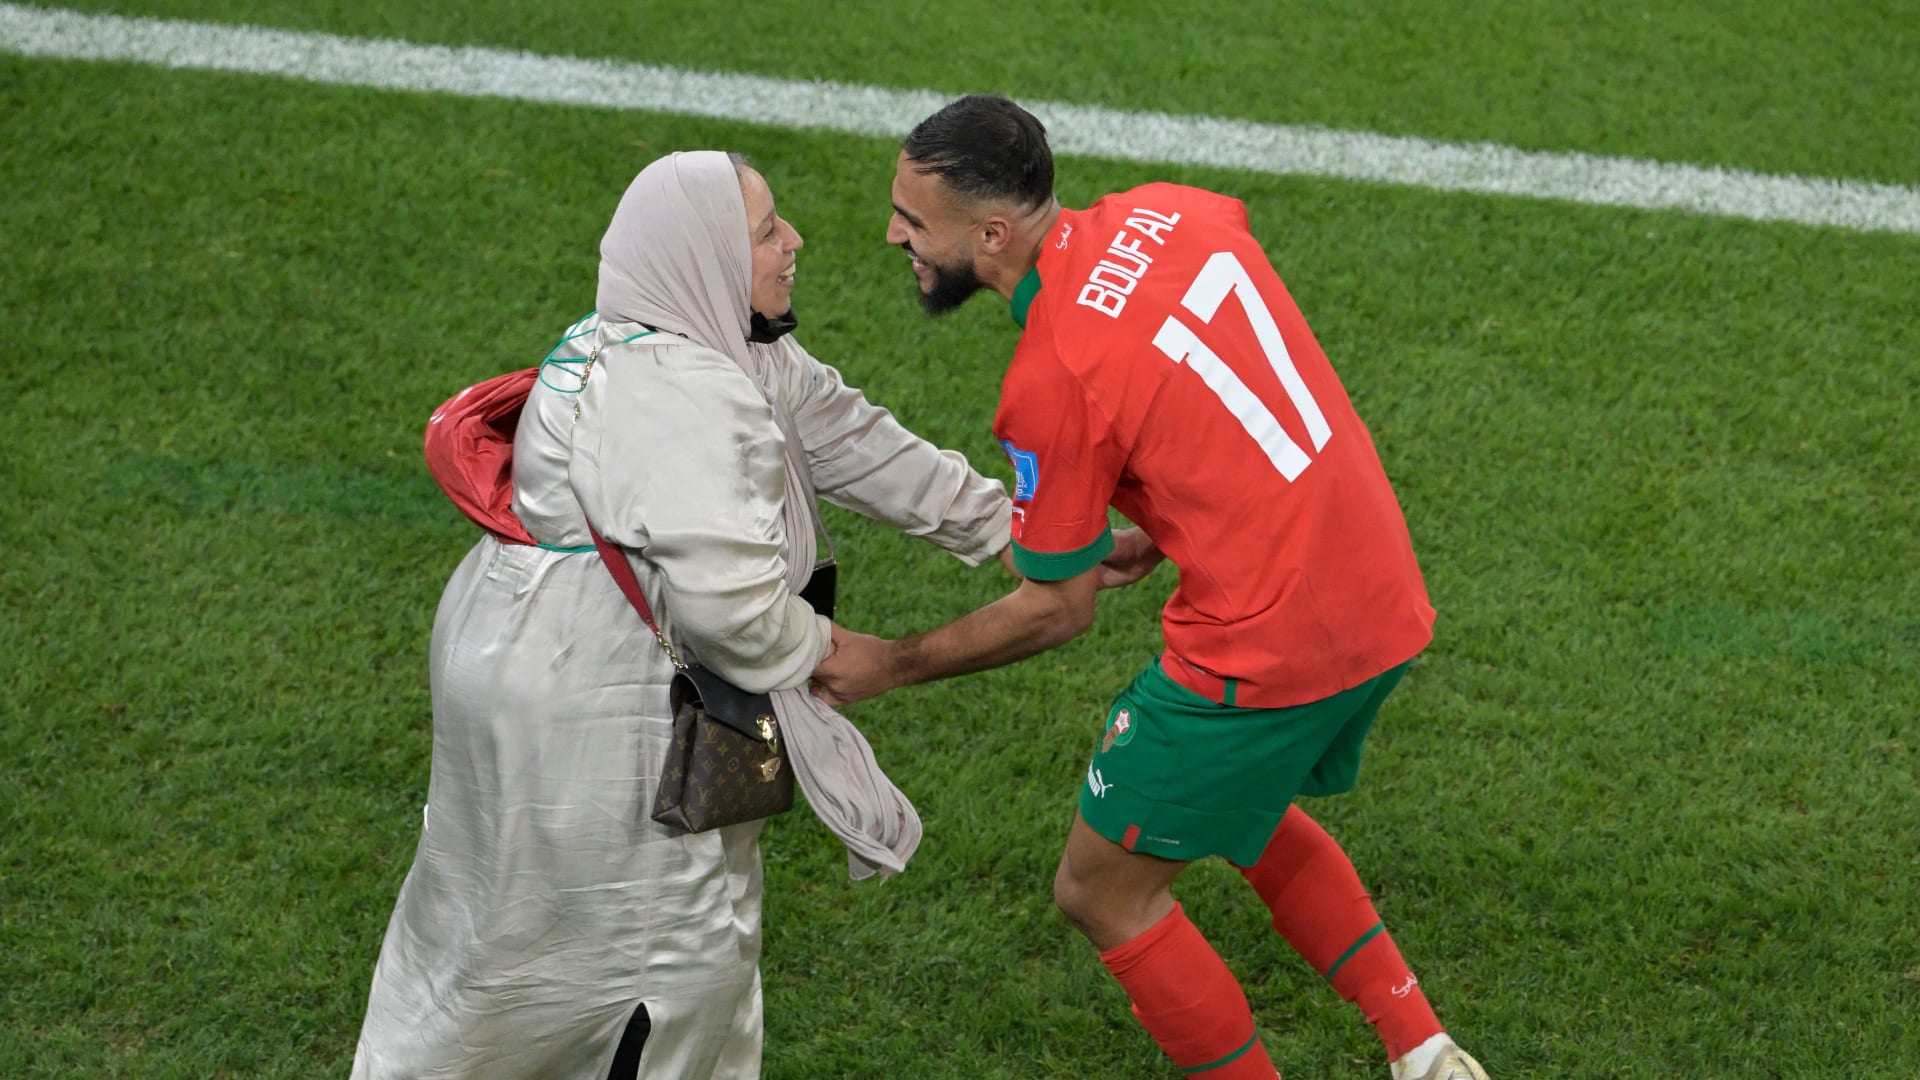 المغرب في نصف النهائي.. هكذا تغلب الركراكي على البرتغال وكتب السطر الأخير لرونالدو في المونديال